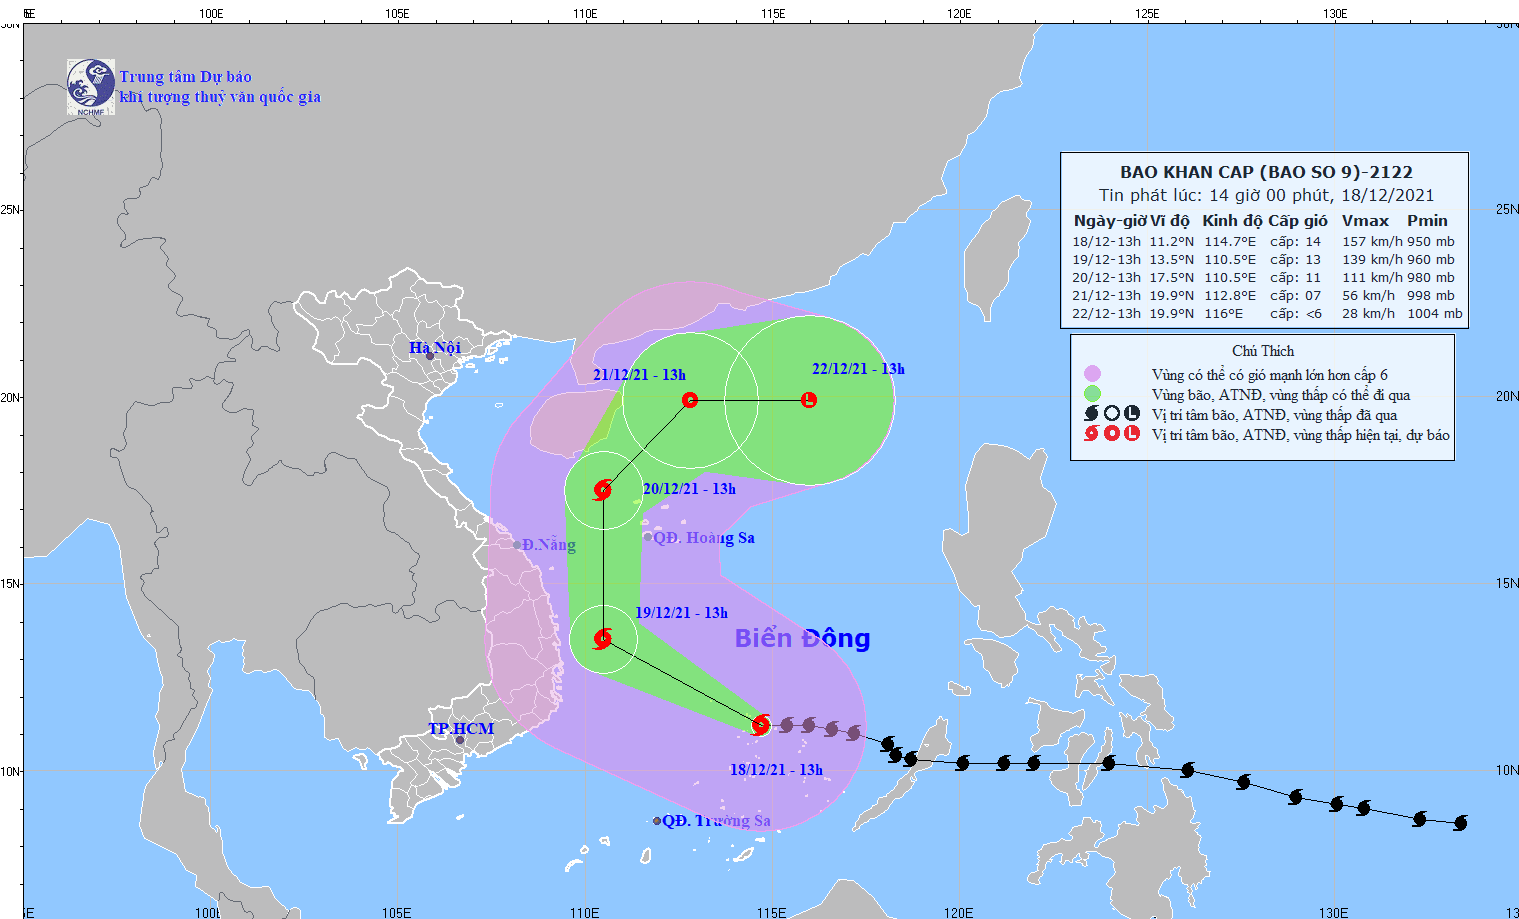 Le typhon RAI va frapper des provinces du Centre